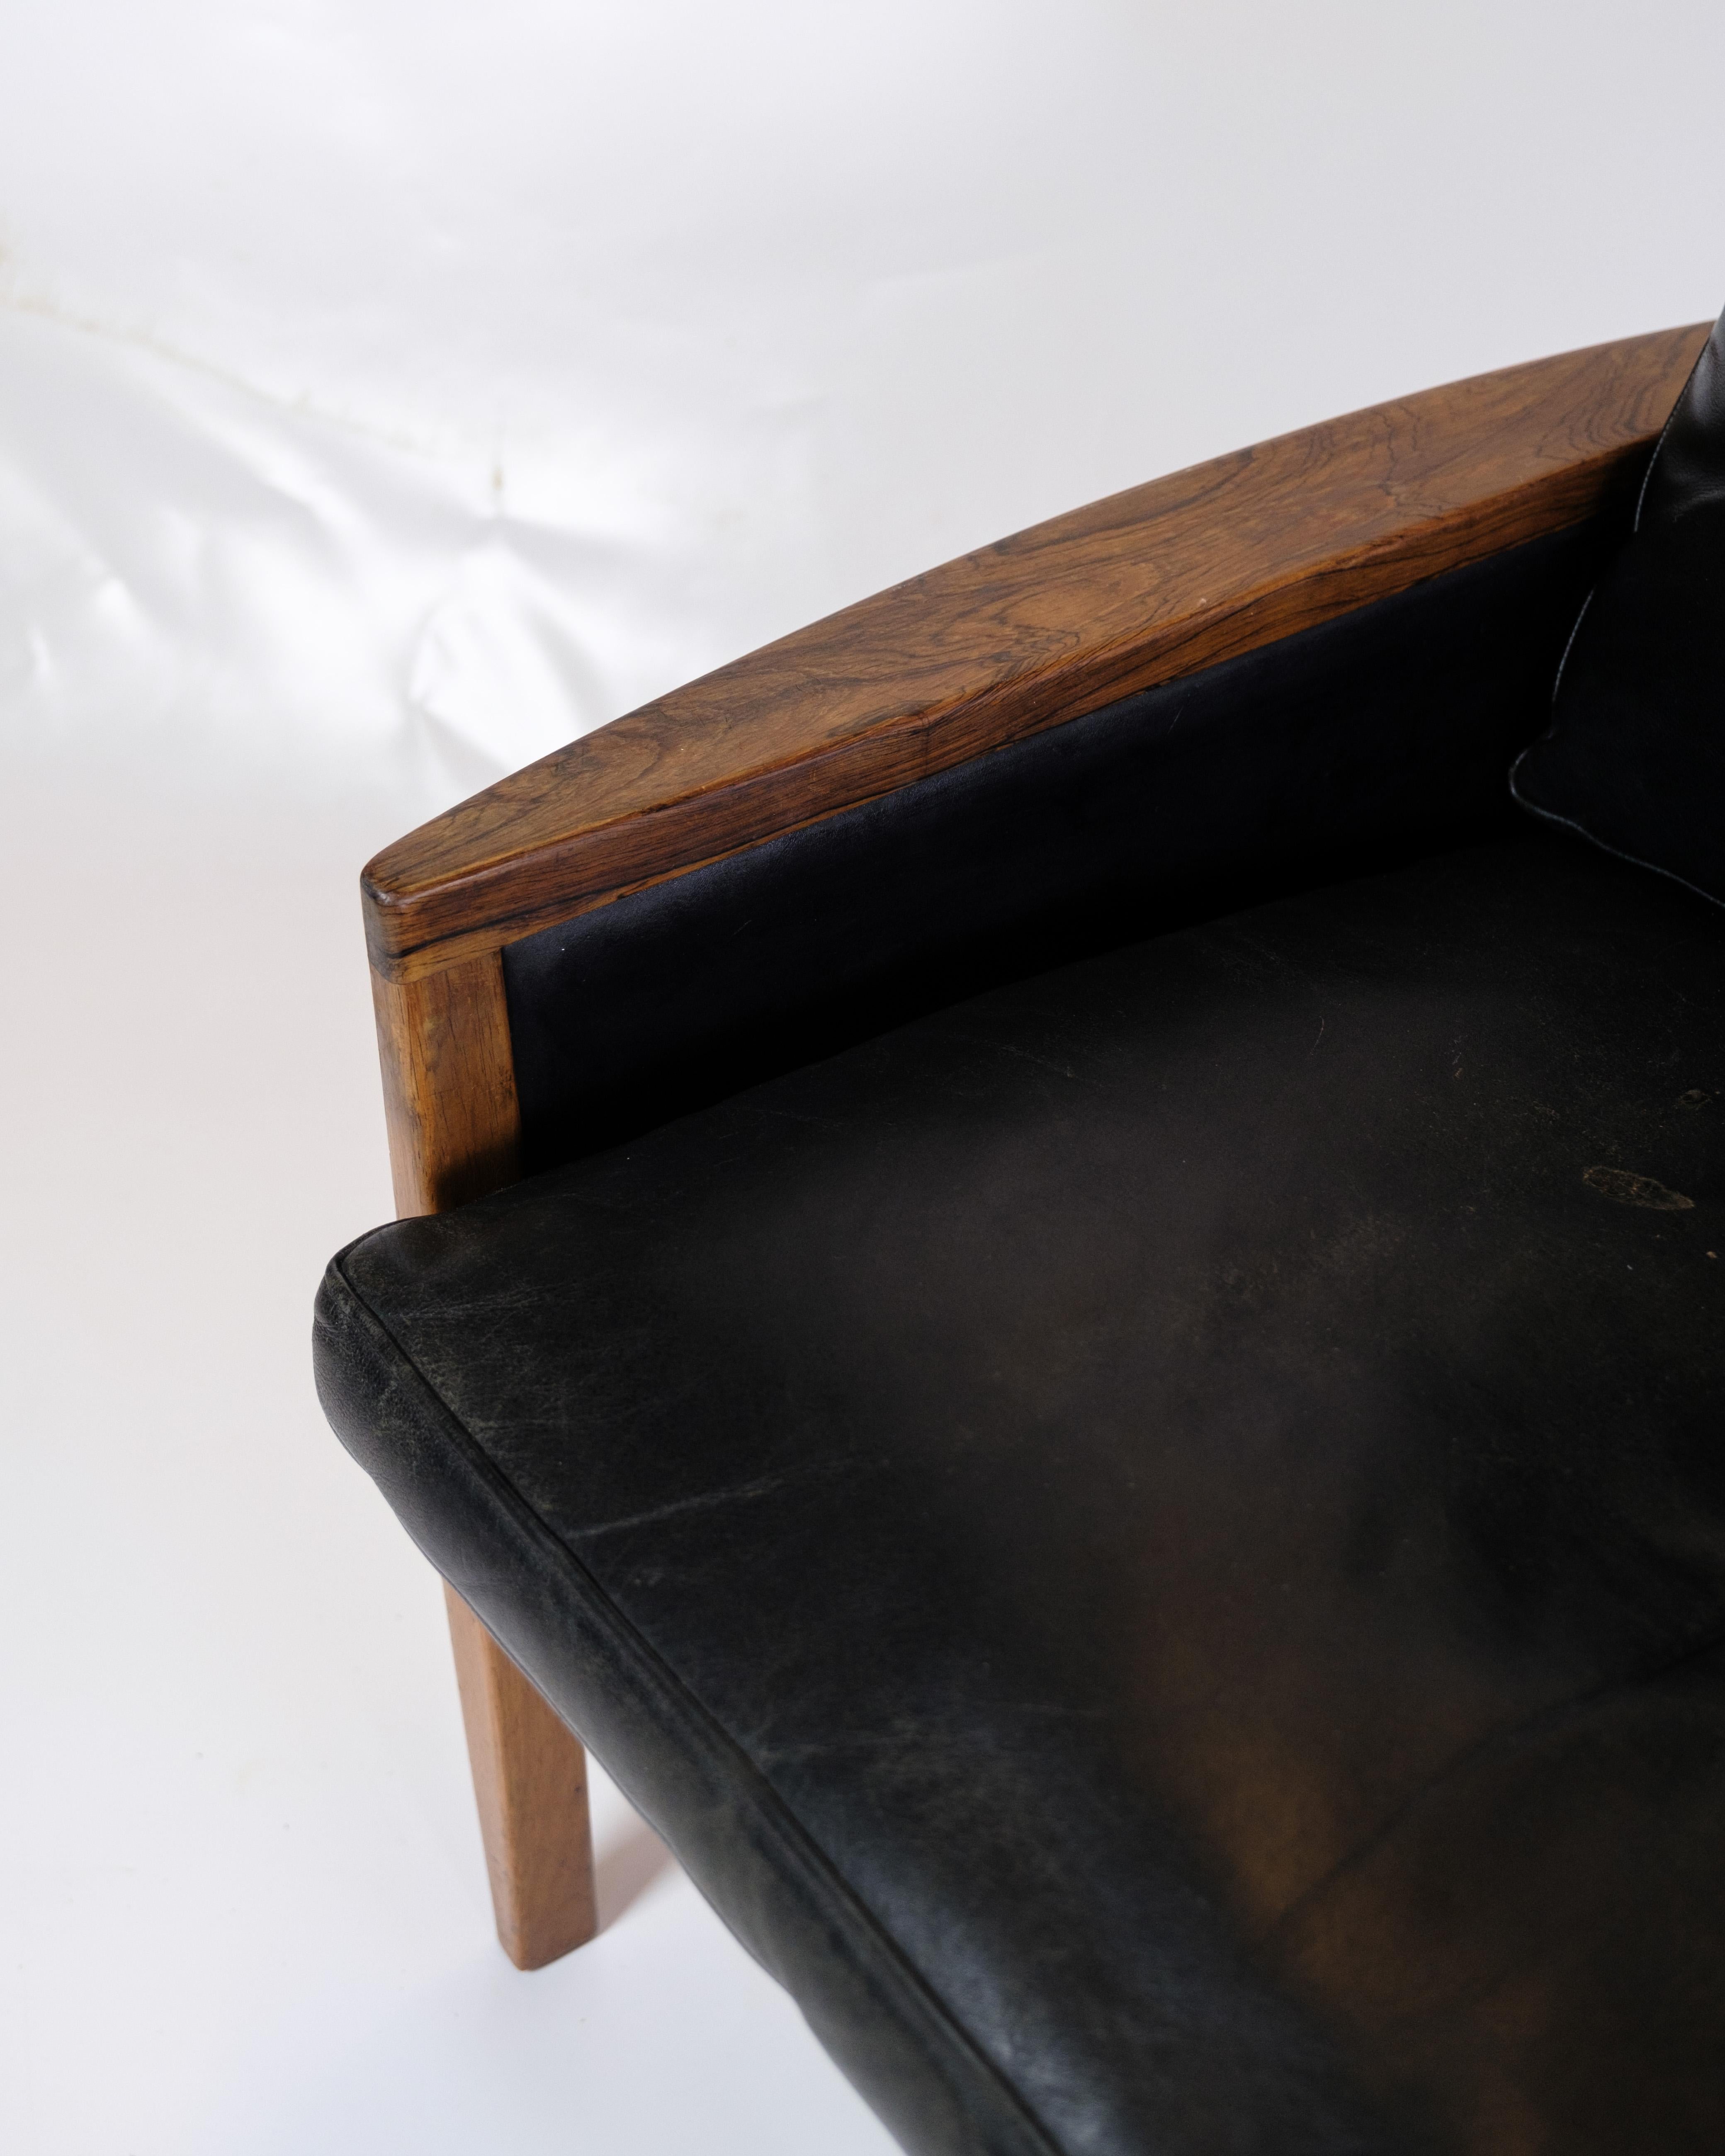 Cet élégant fauteuil en bois de rose avec coussins en cuir noir est un splendide exemple de design danois classique. Le bois de rose, avec sa couleur profonde et son grain fin, confère à la chaise un aspect unique et luxueux, tandis que le cuir noir